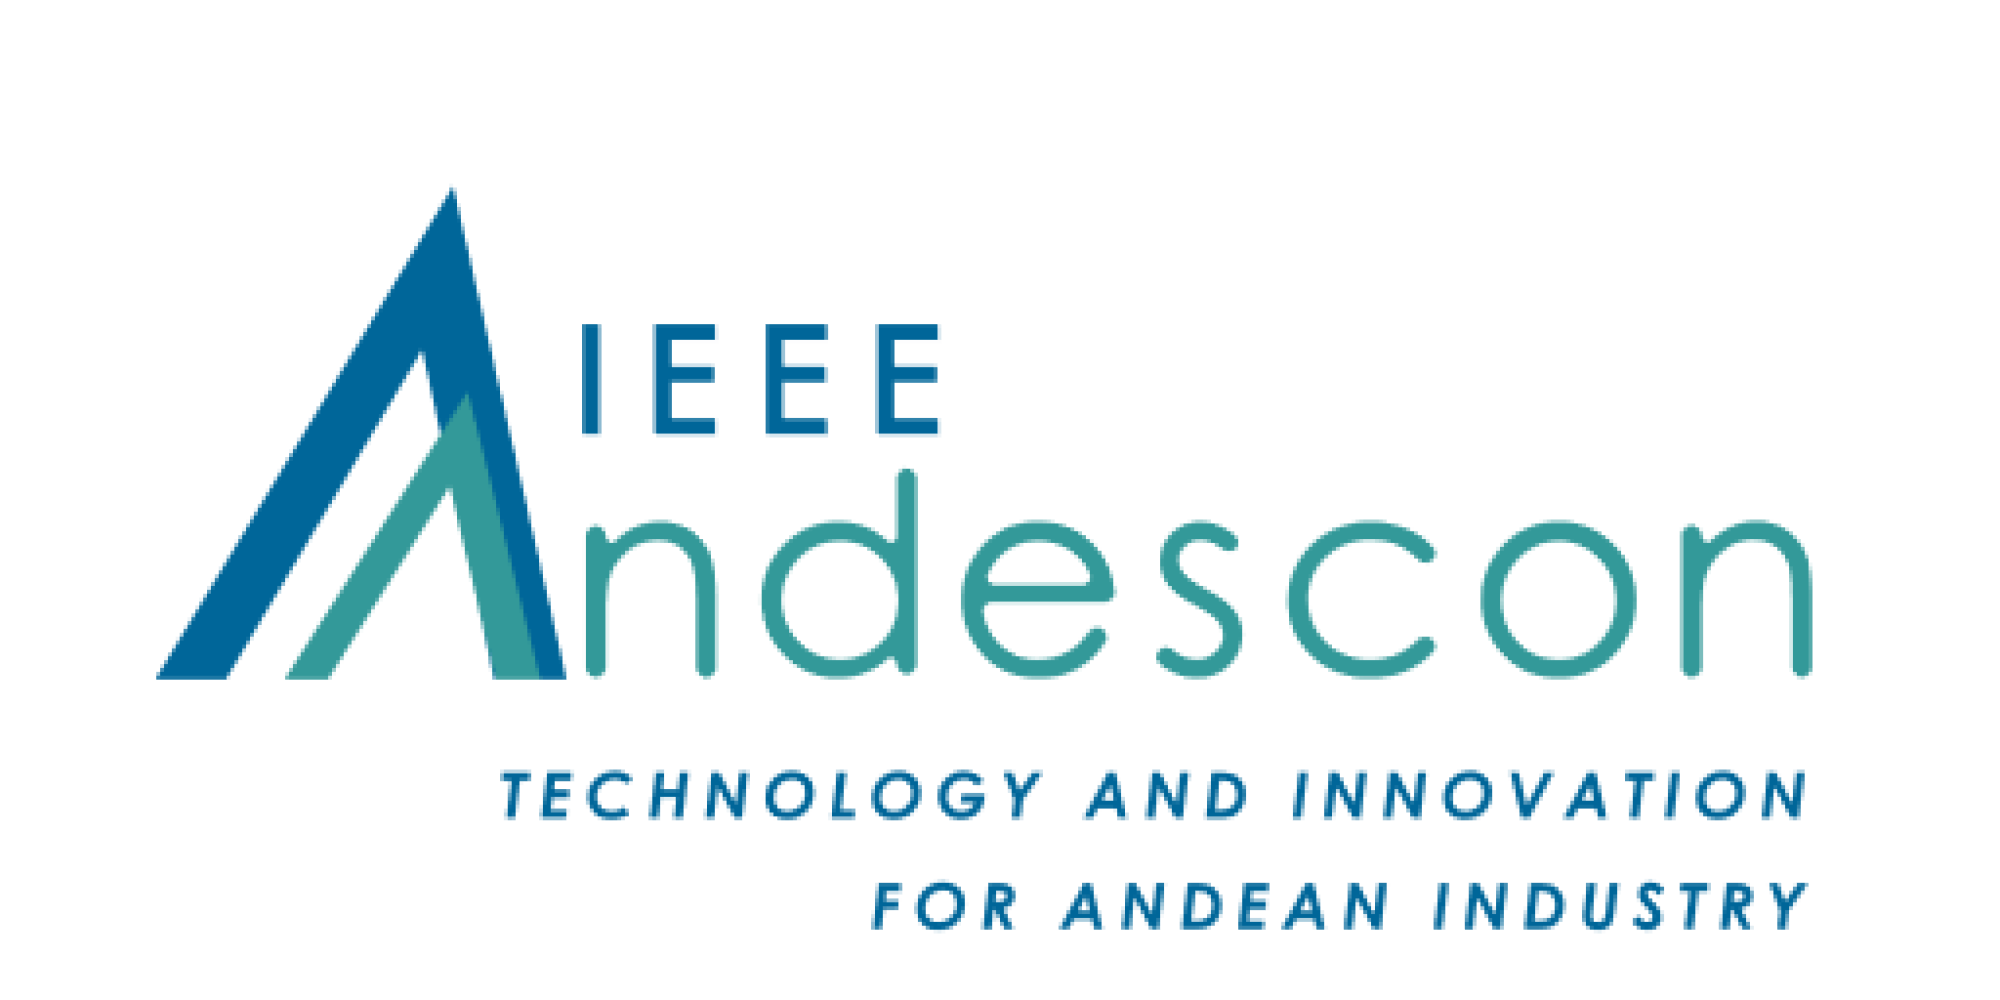 IEEE Andescon logo